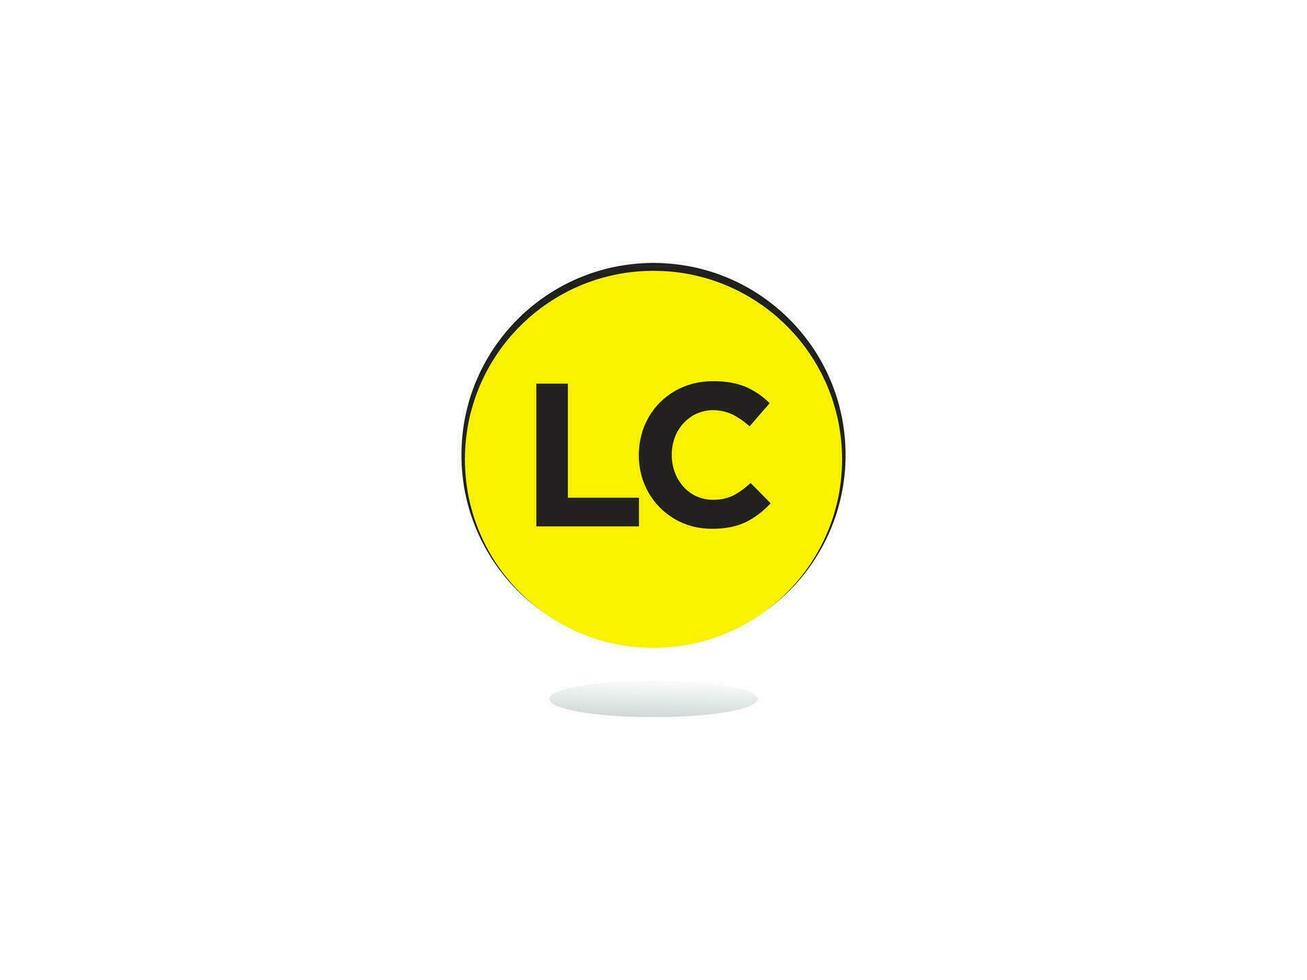 moderno lc logotipo carta vetor imagem Projeto para você